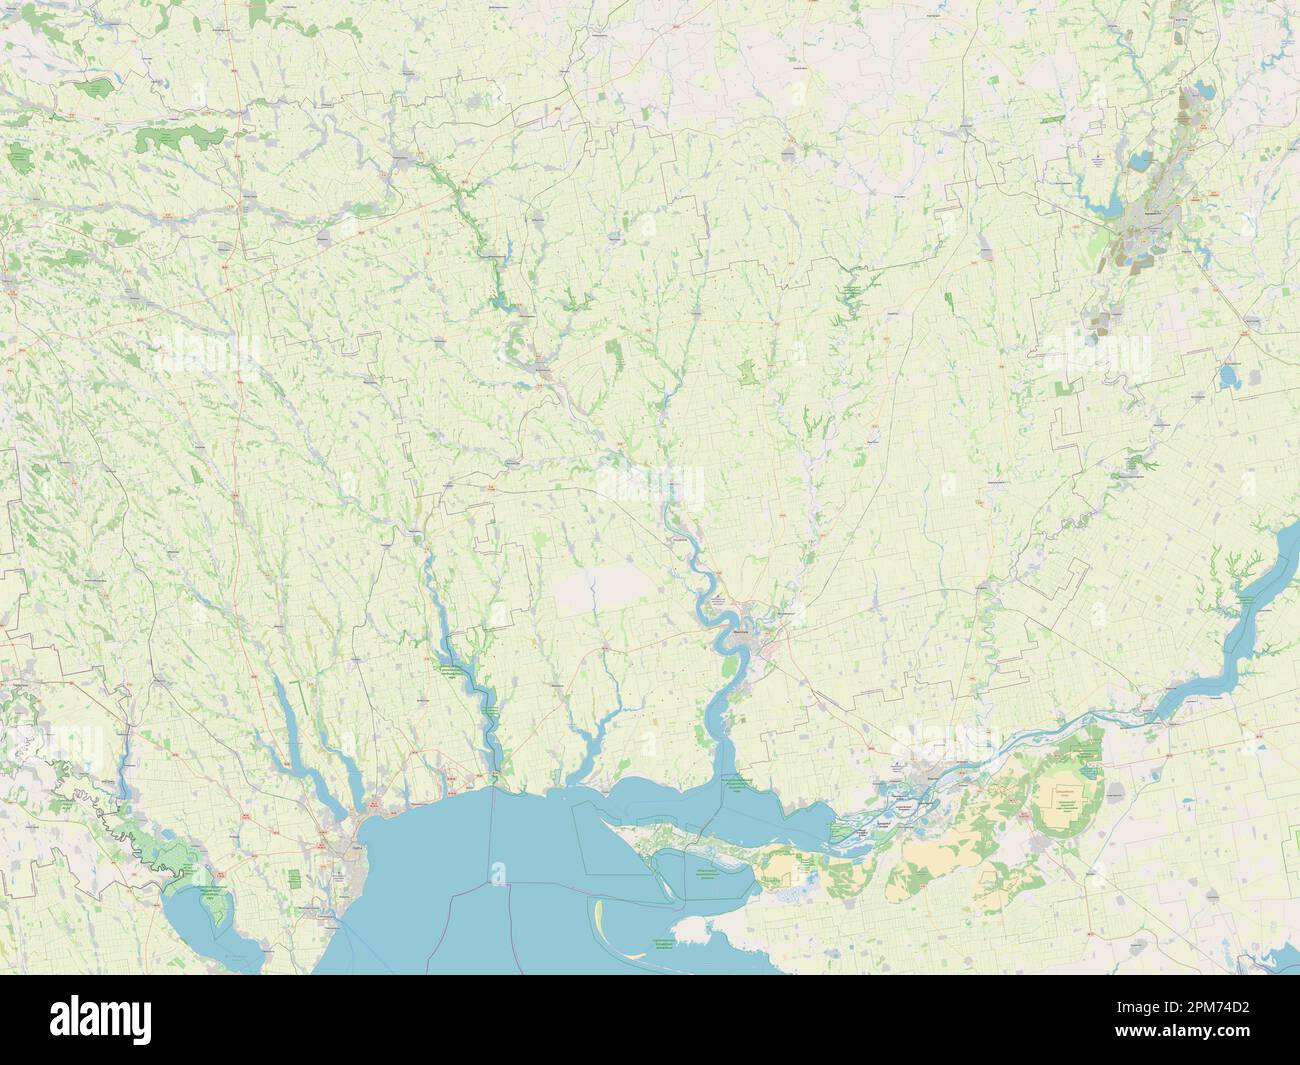 Mykolayiv, region of Ukraine. Open Street Map Stock Photo